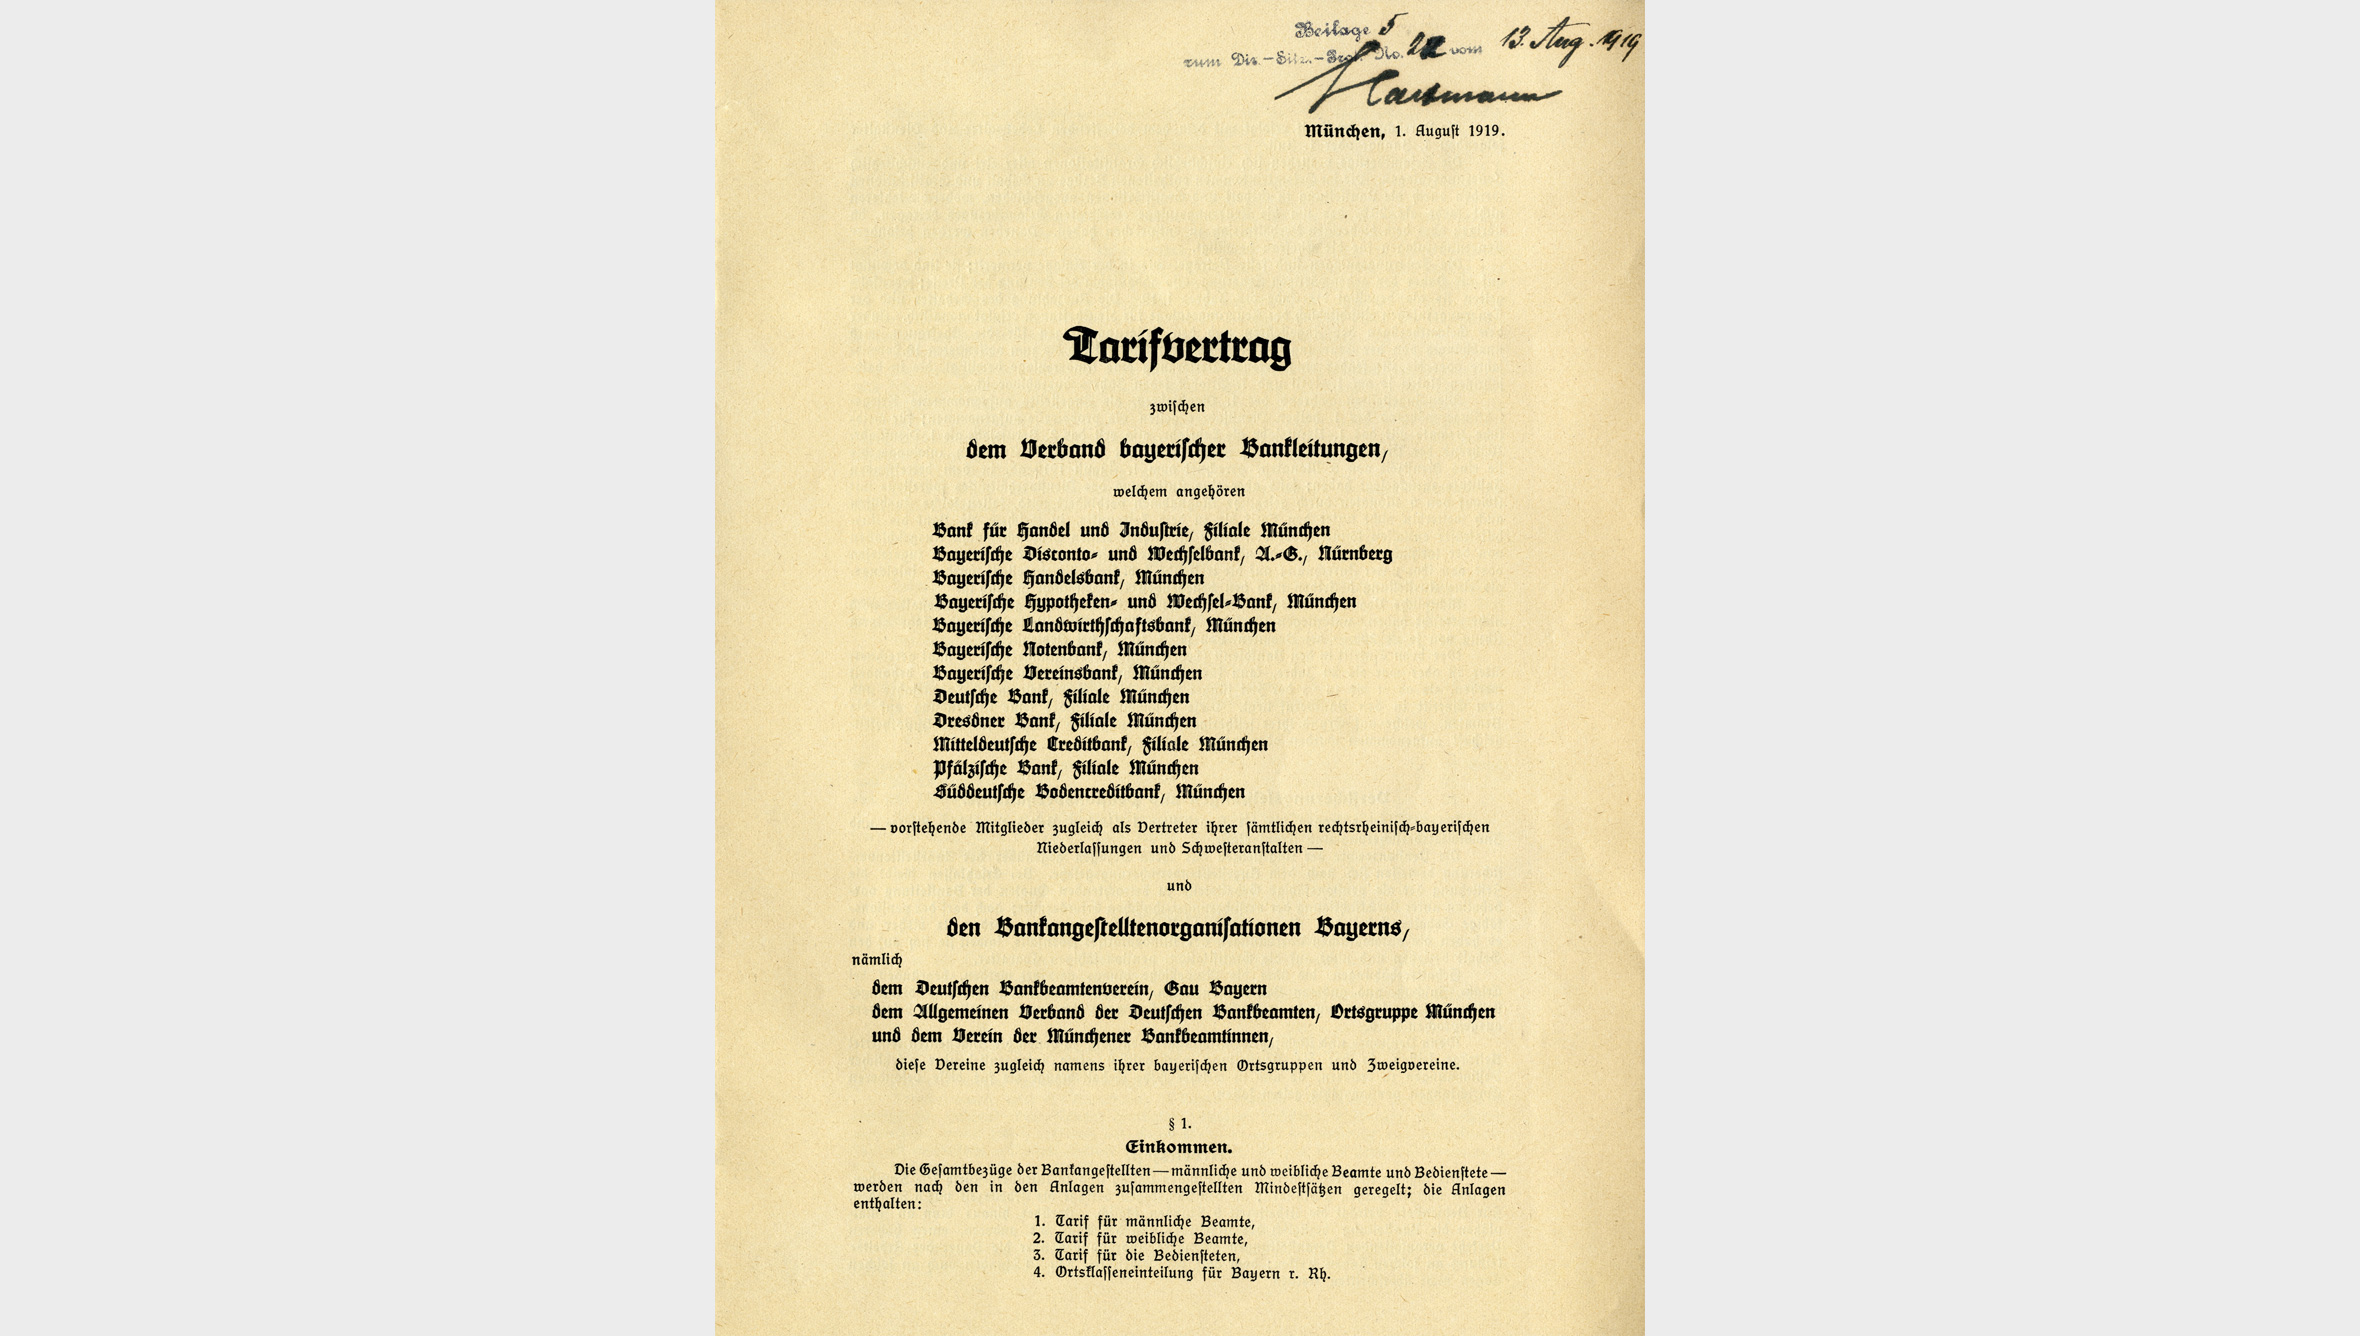 Im Oktober 1919 schlossen der Verband bayerischer Bankleitungen und die Angestelltengewerkschaften den ersten Tarifvertrag.